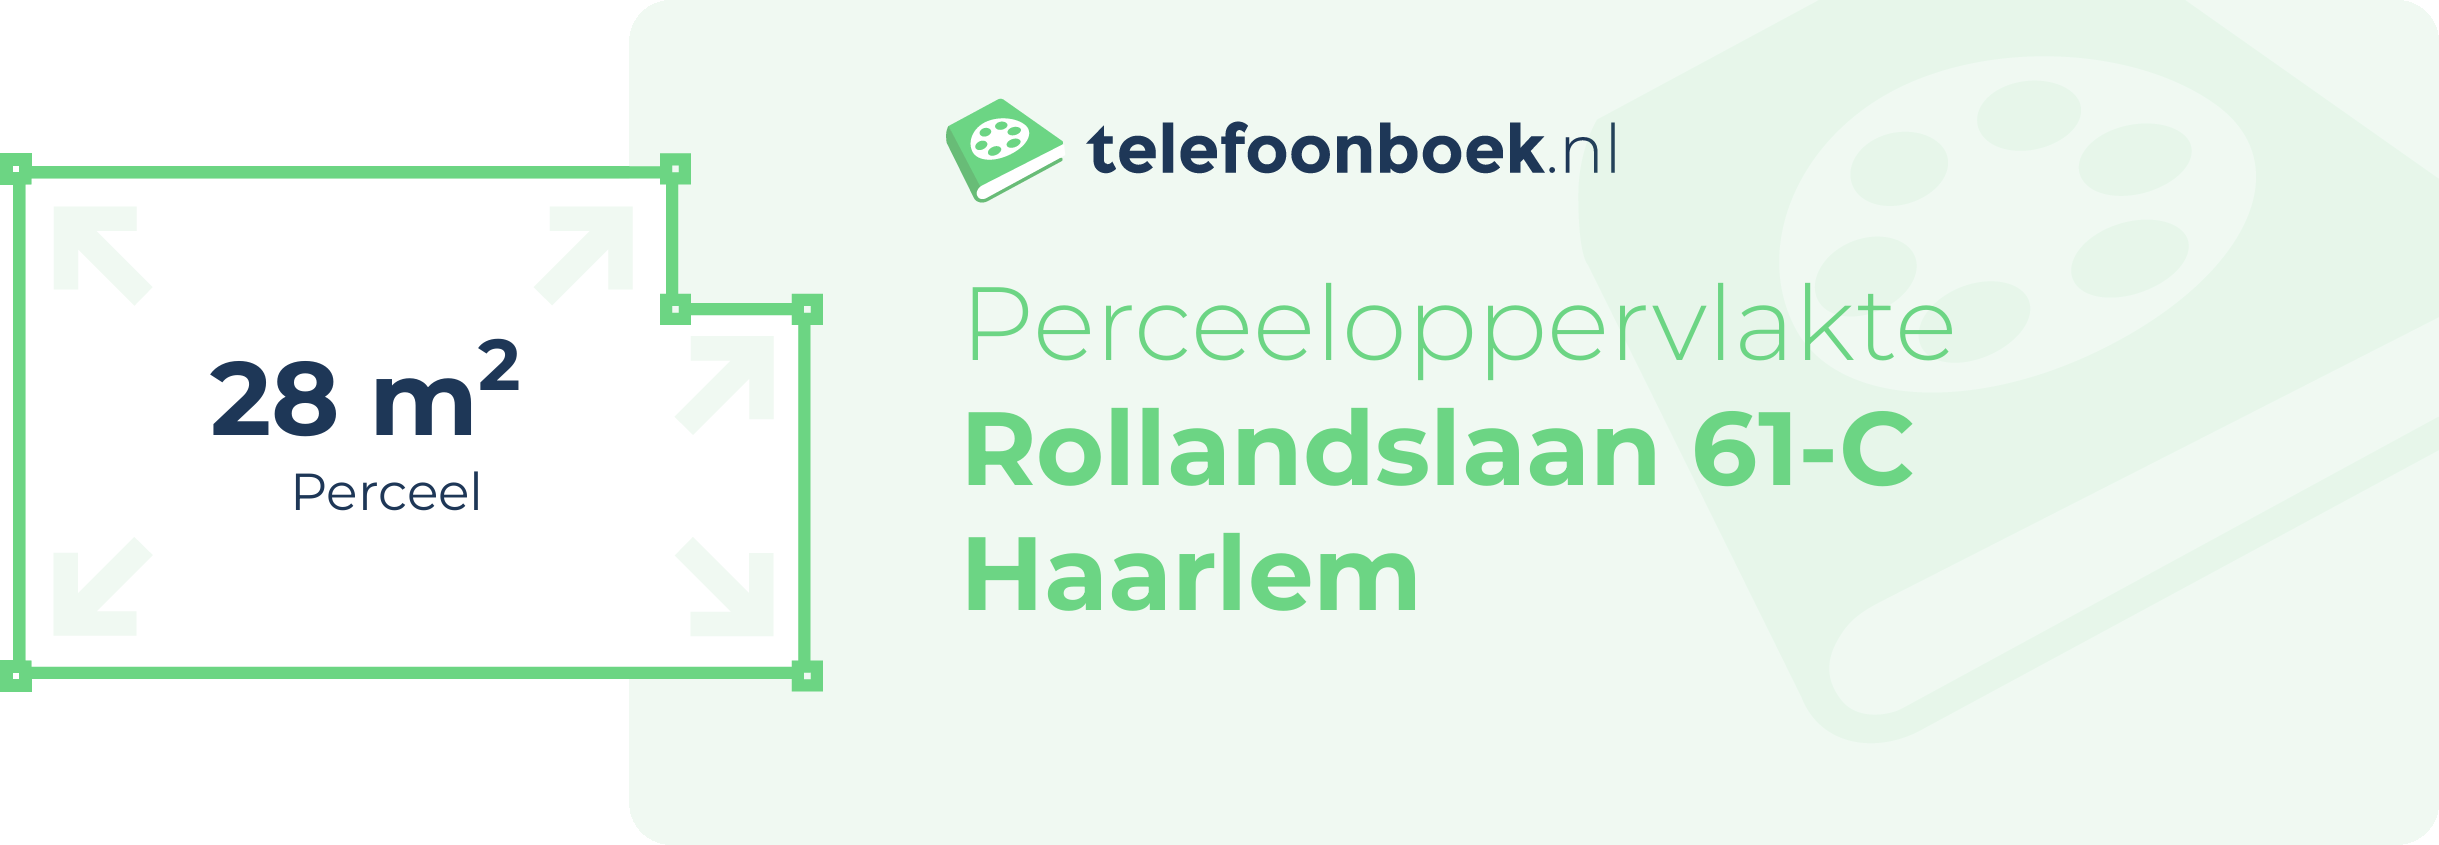 Perceeloppervlakte Rollandslaan 61-C Haarlem